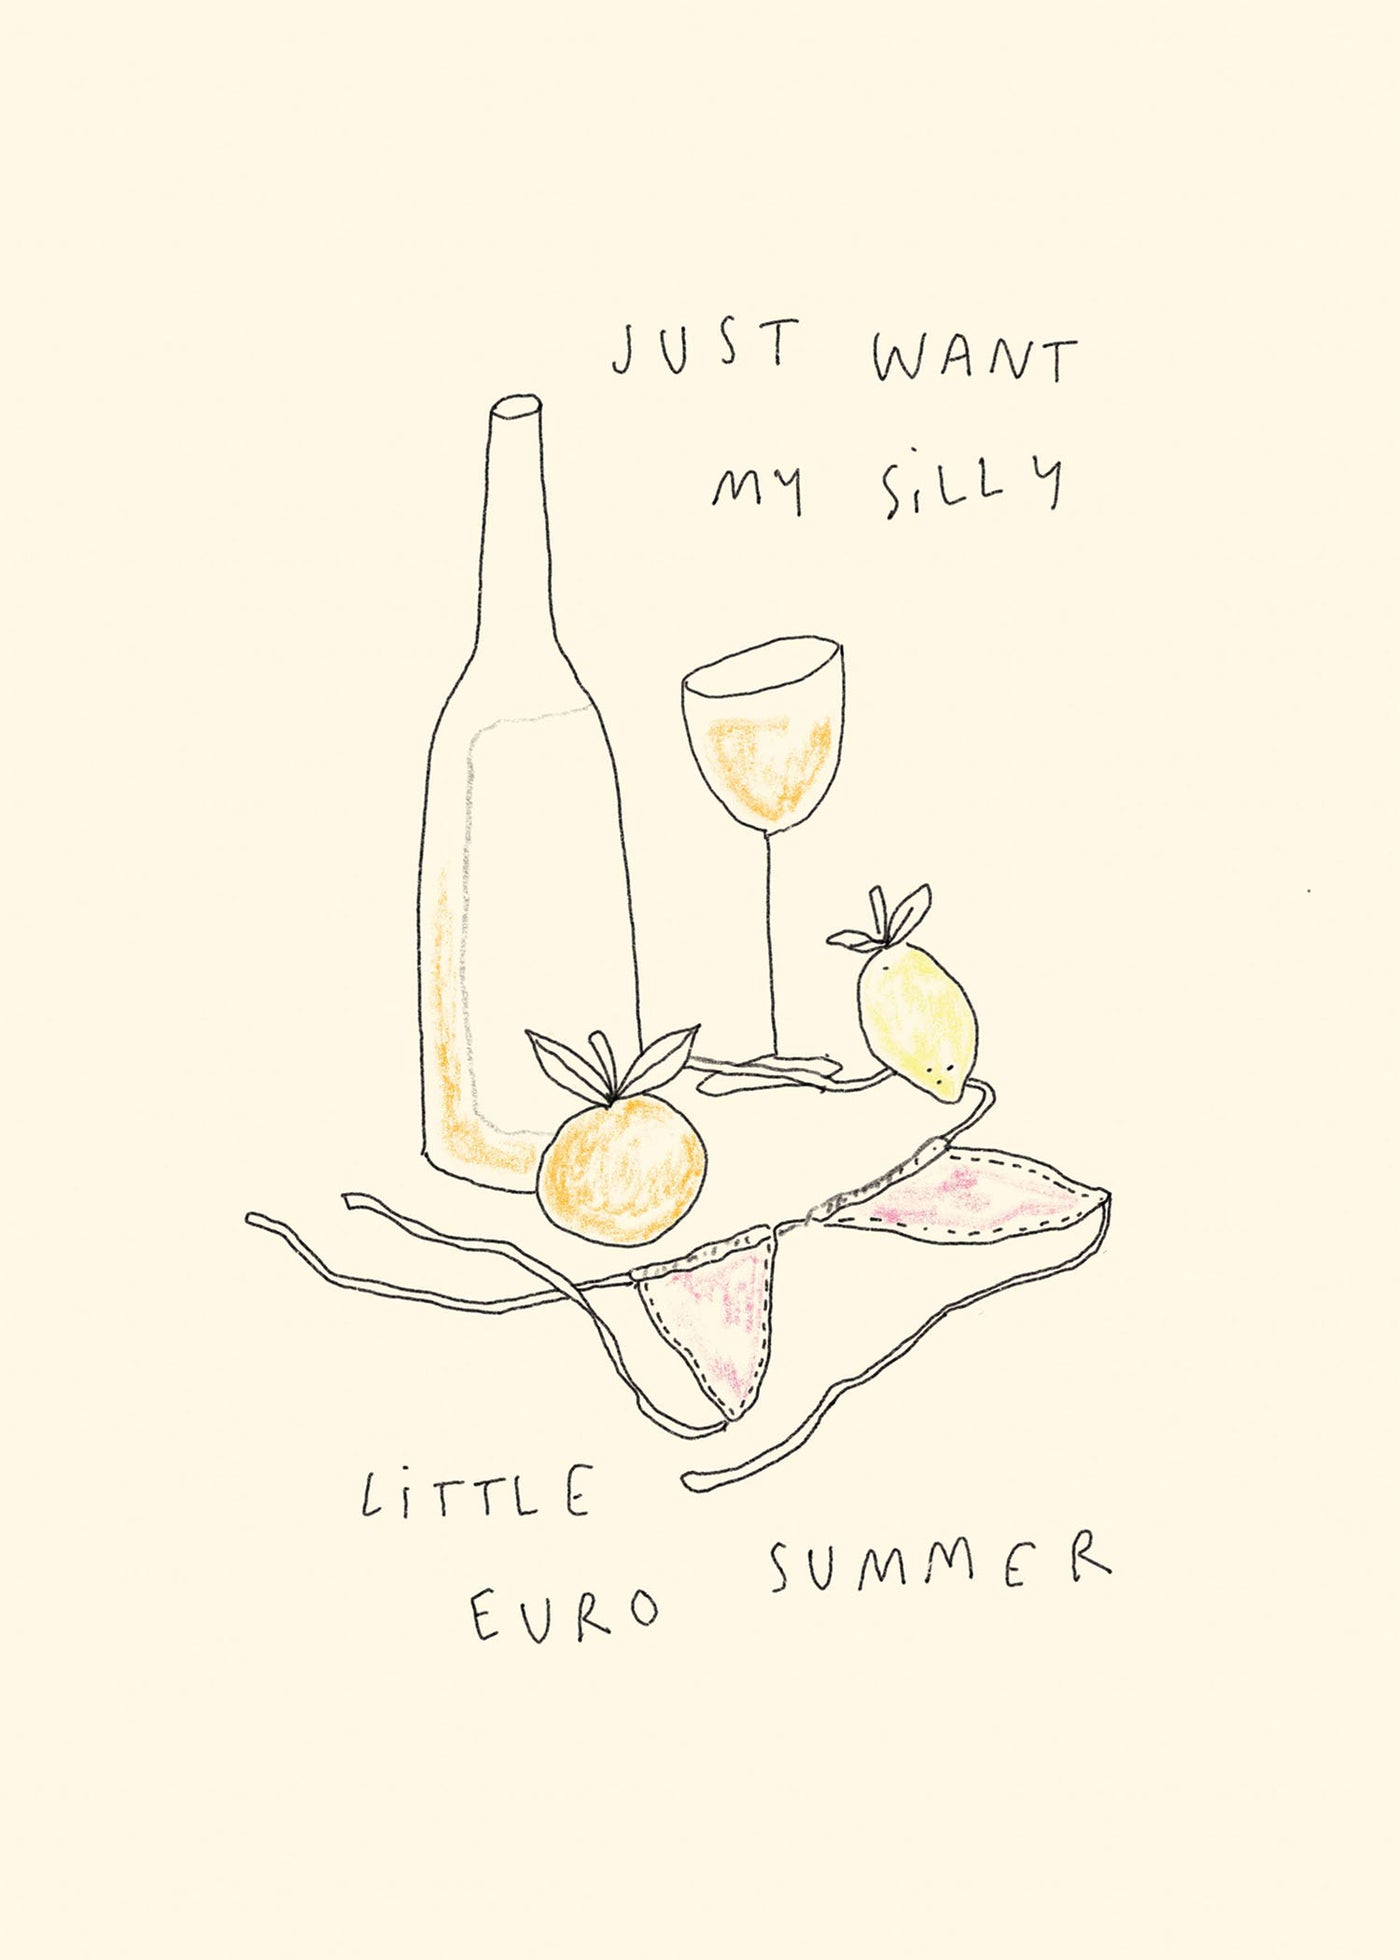 Silly Little Euro Summer